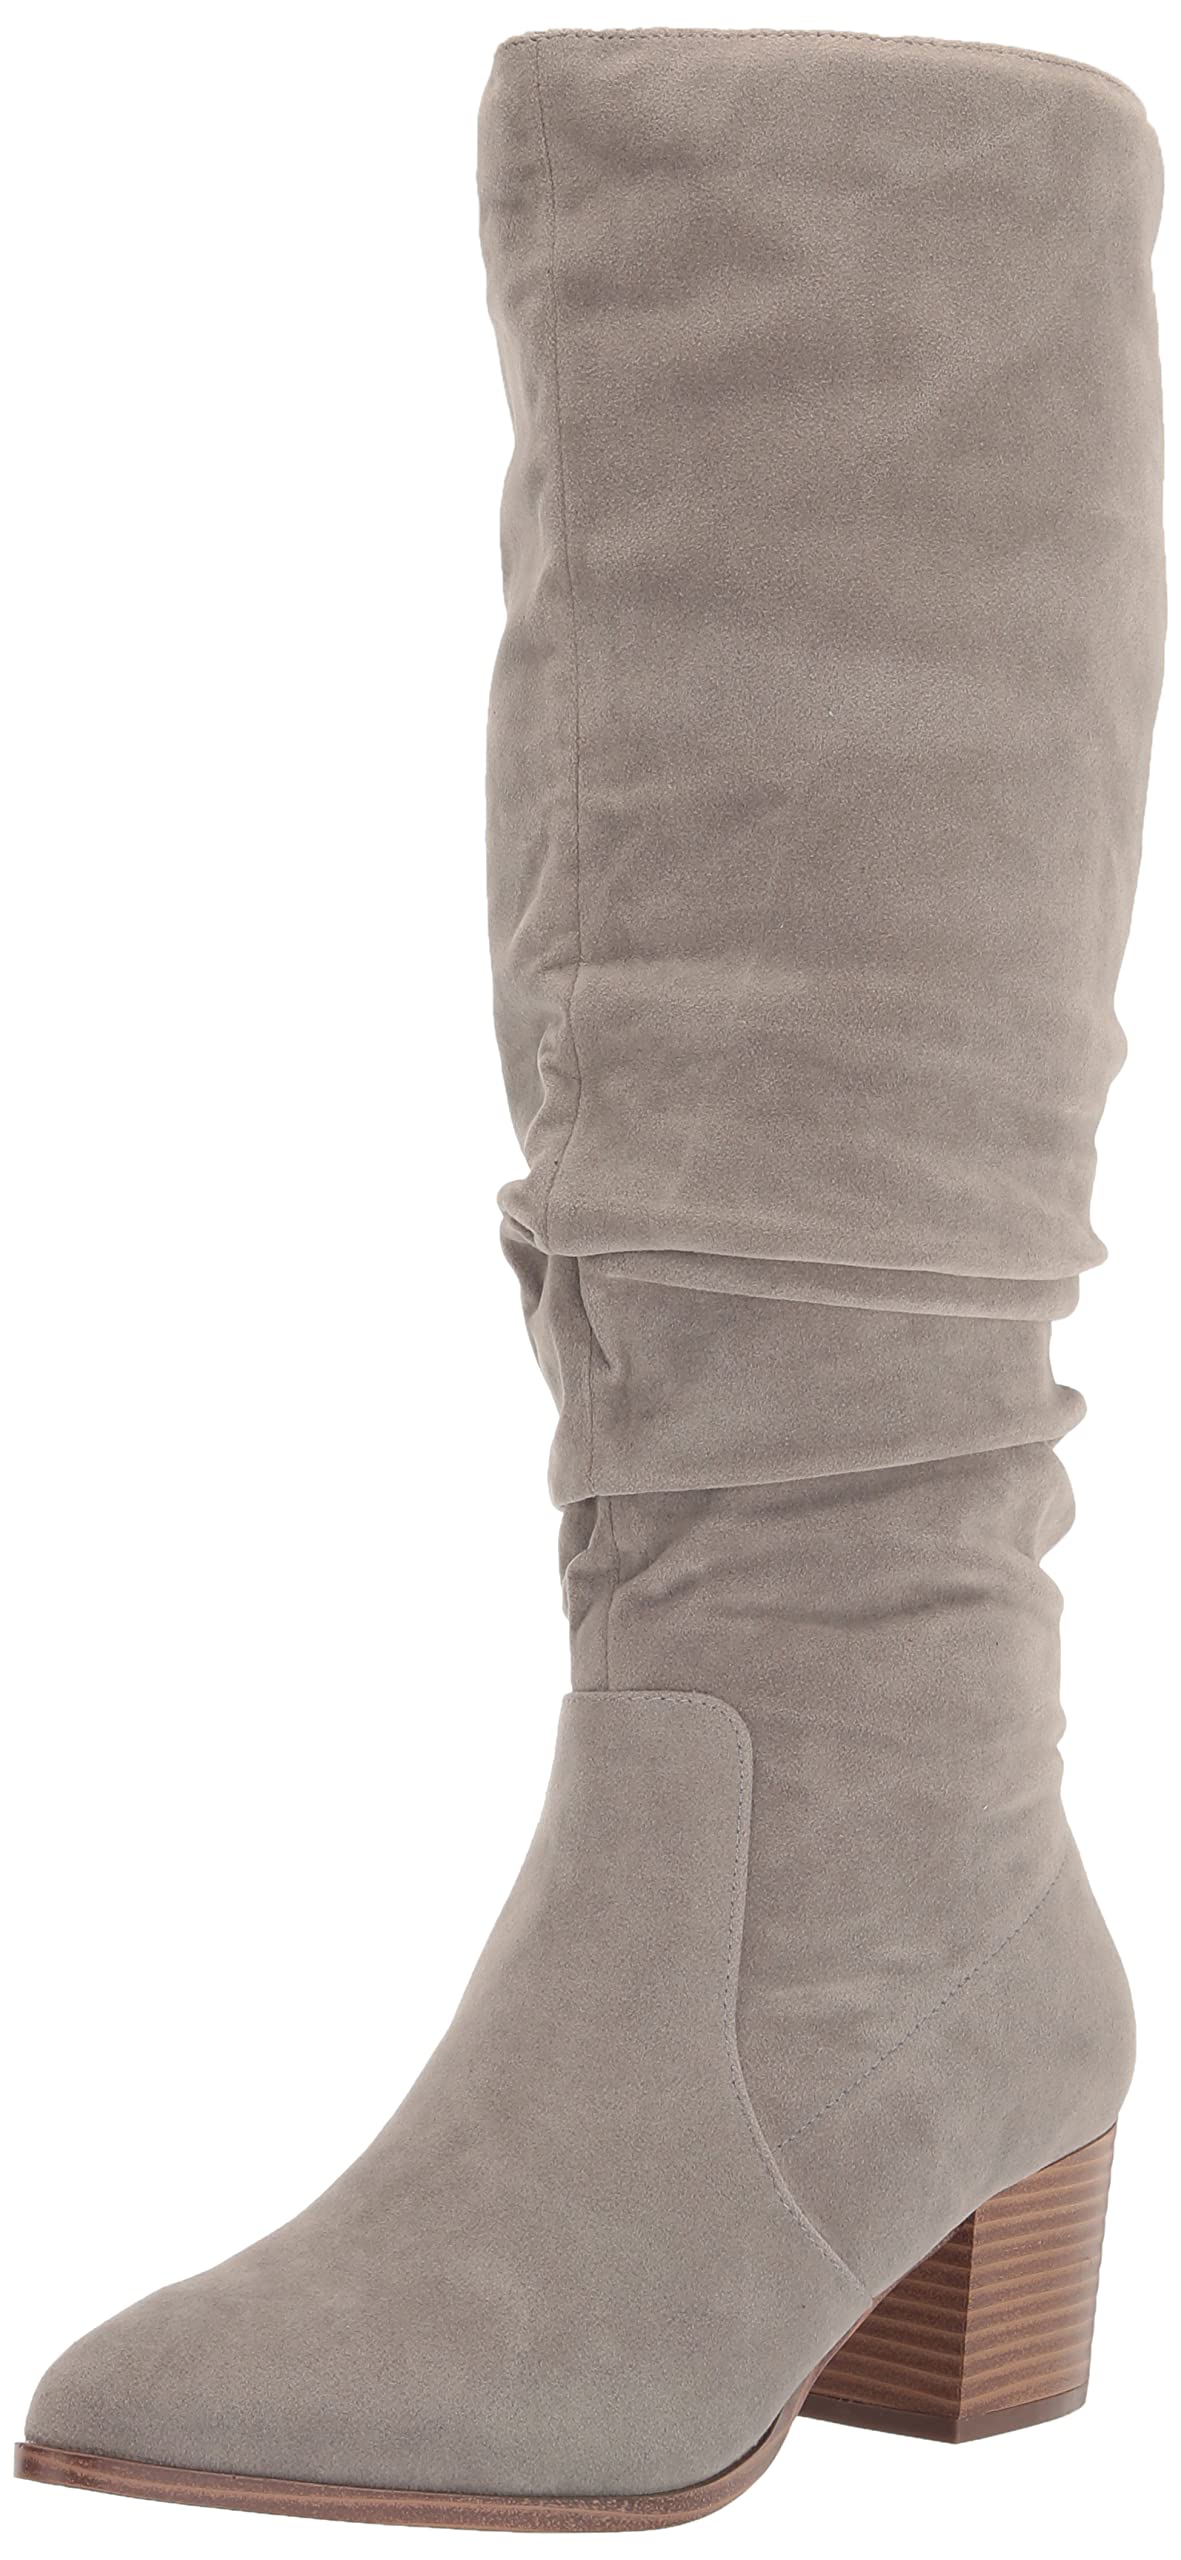 Amazon Essentials Women's Tall Block Heel Boots